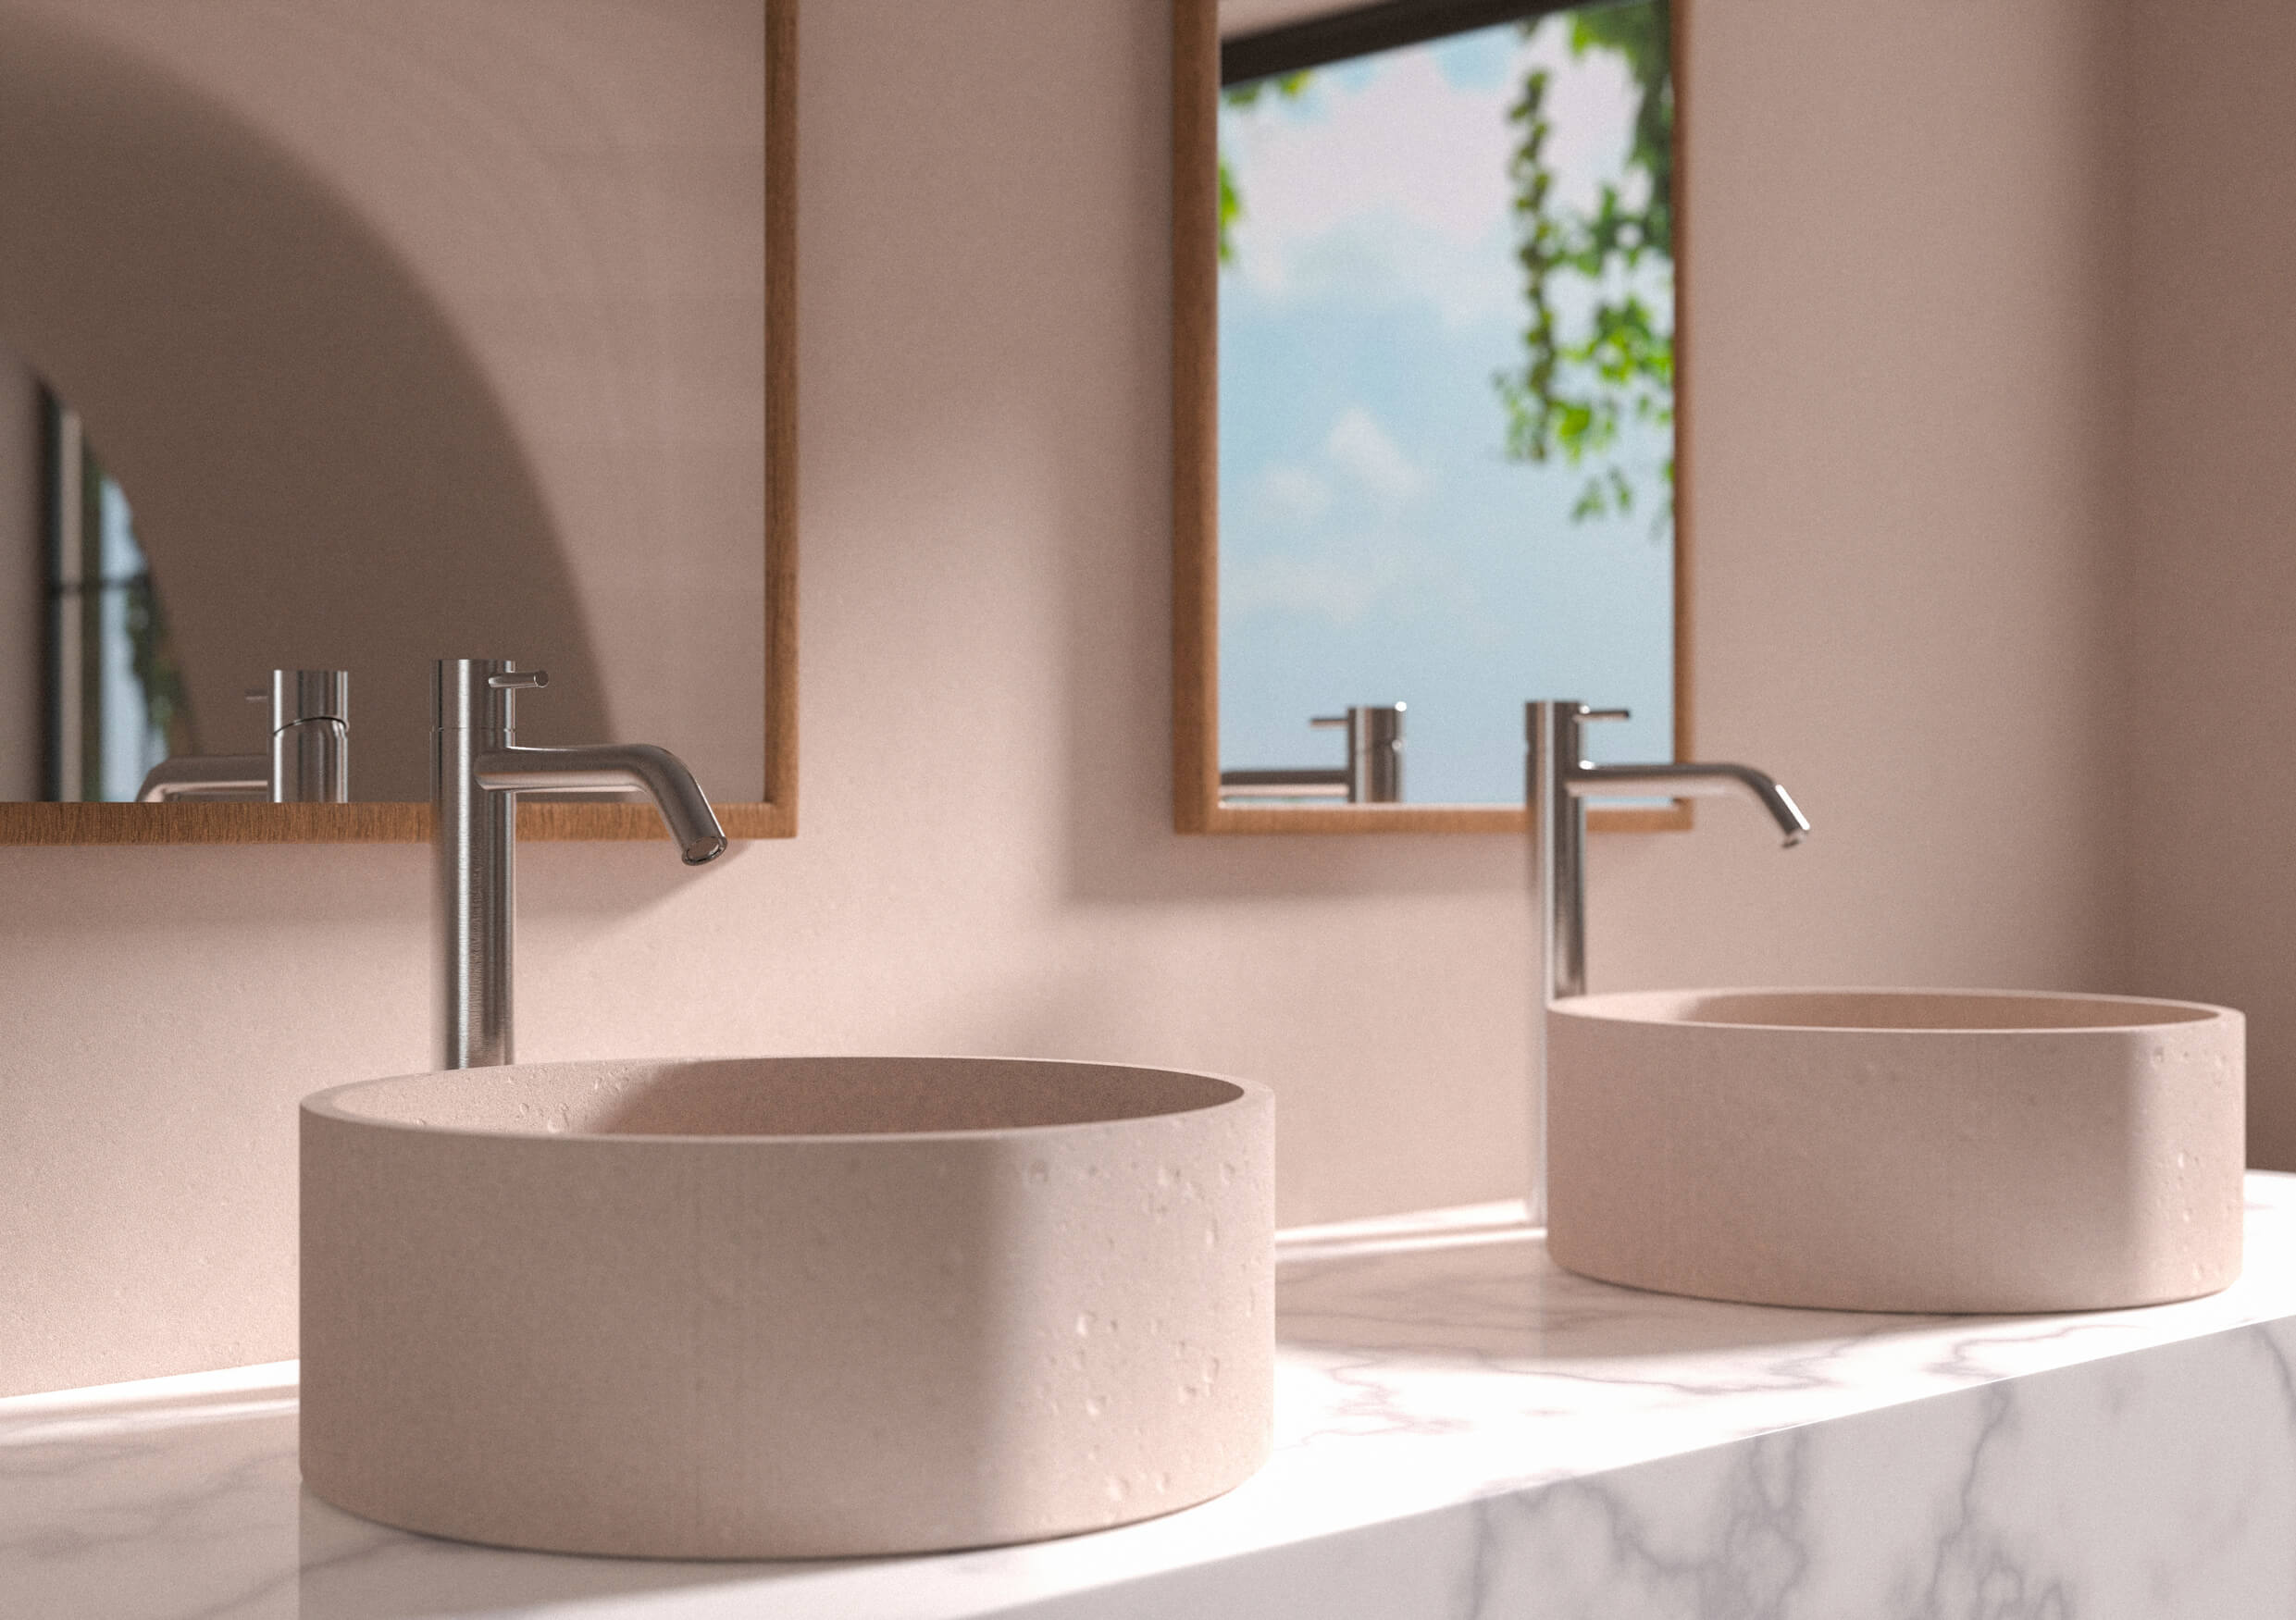 Modernes Badezimmer mit runden Steinspülen, Edelstahlarmaturen und einer Aussicht auf Grünanlagen.